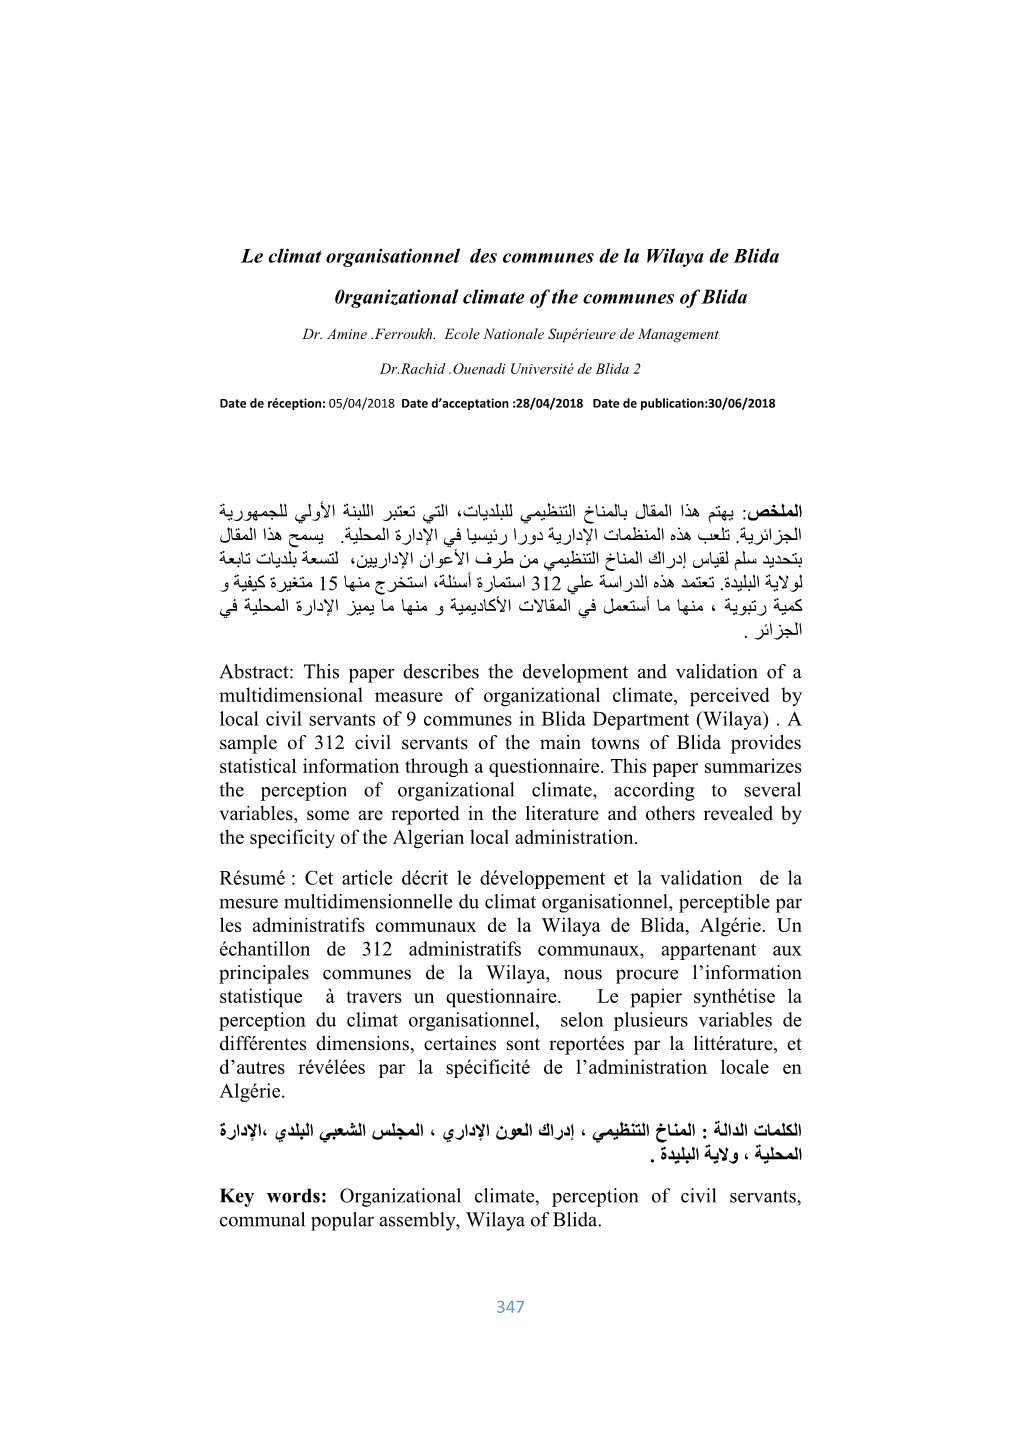 Le Climat Organisationnel Des Communes De La Wilaya De Blida 0Rganizational Climate of the Communes of Blida